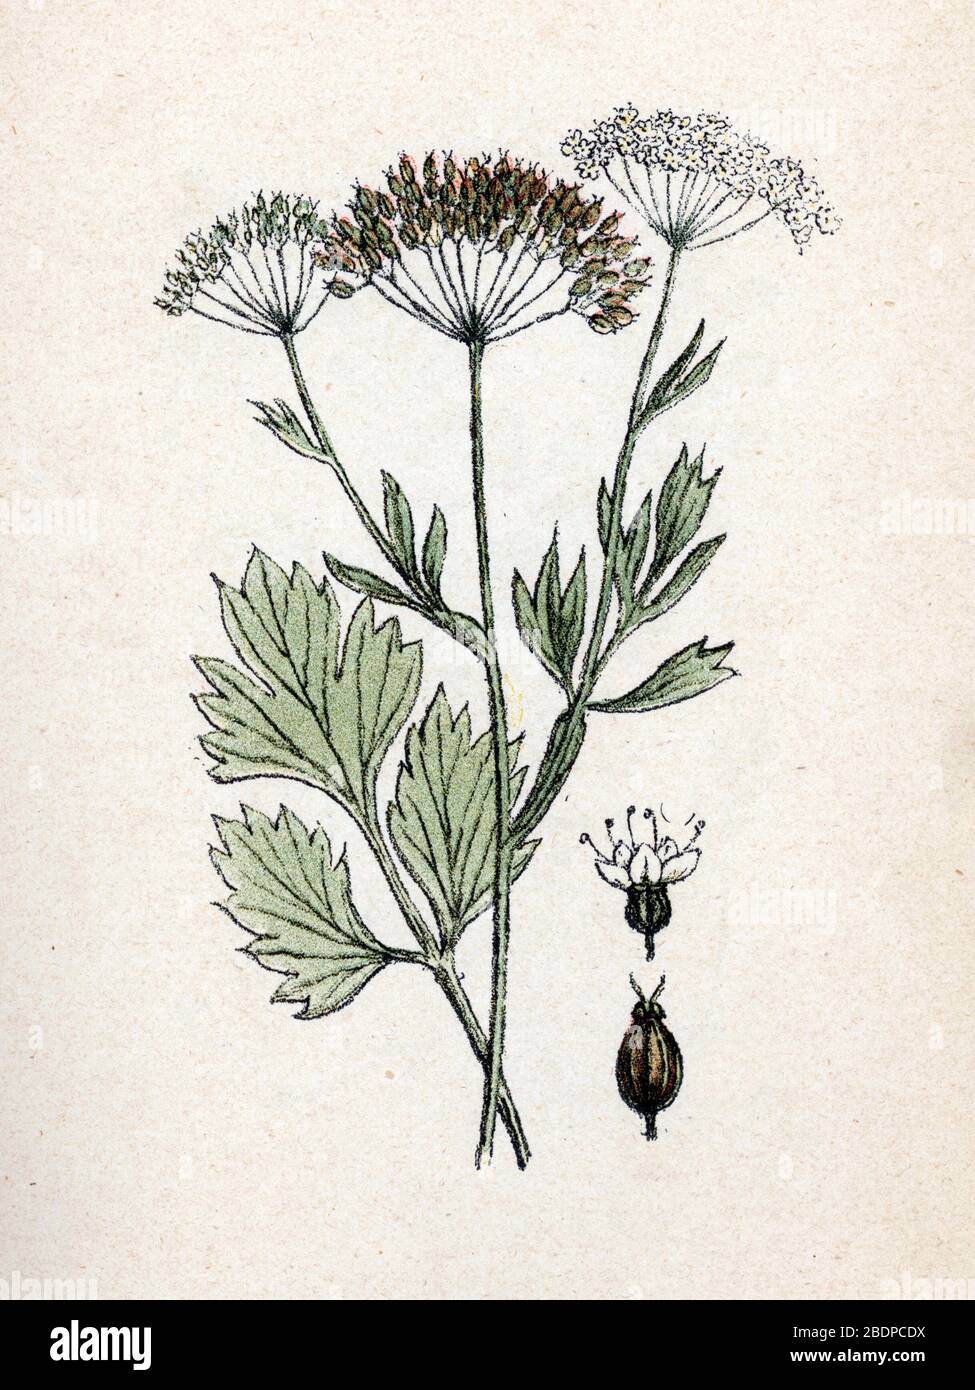 Anis' (Pimpinella anisum) (anise or aniseed) Planche de botanique tiree de  "Atlas colorie des plantes medicinales" de Paul Hariot, 1900 (Botanical pl  Stock Photo - Alamy